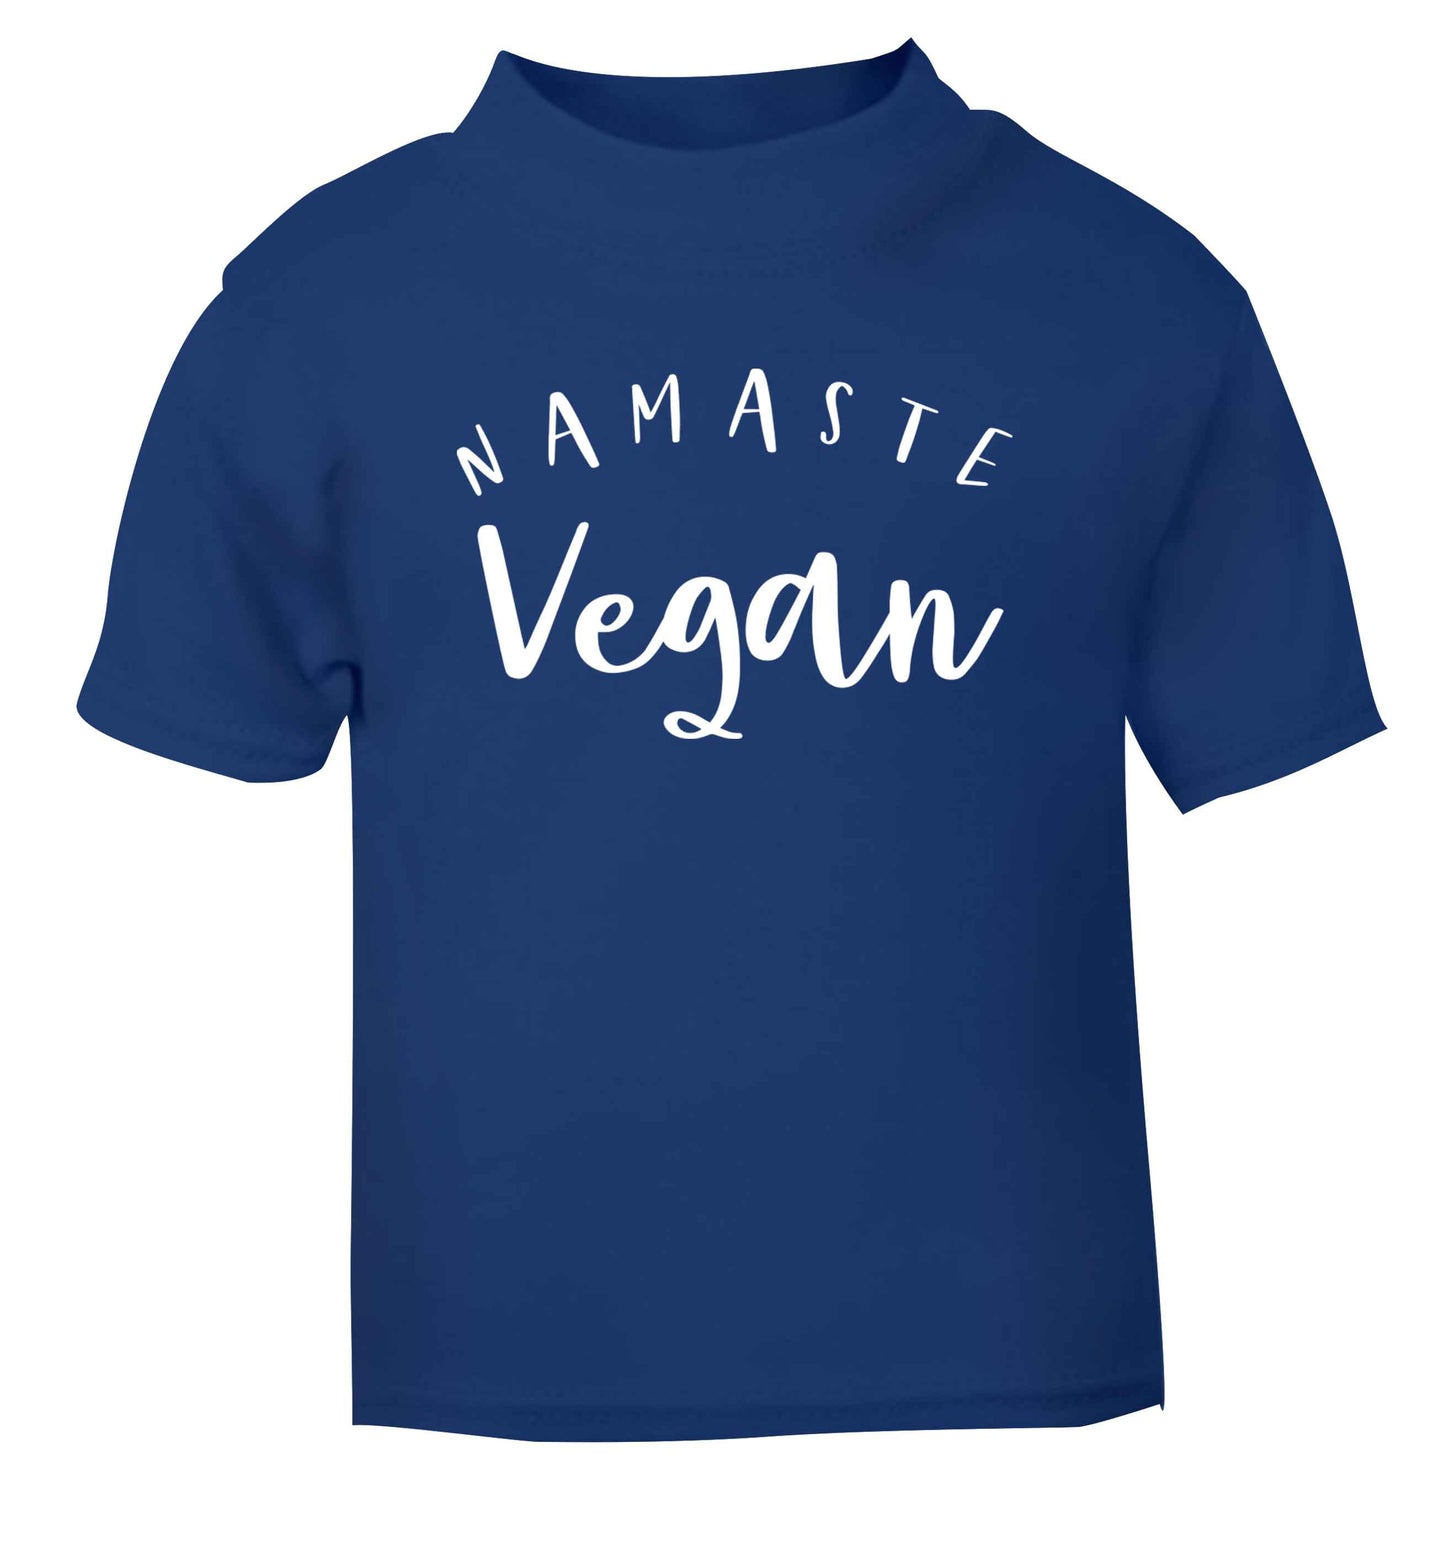 Namaste vegan blue Baby Toddler Tshirt 2 Years